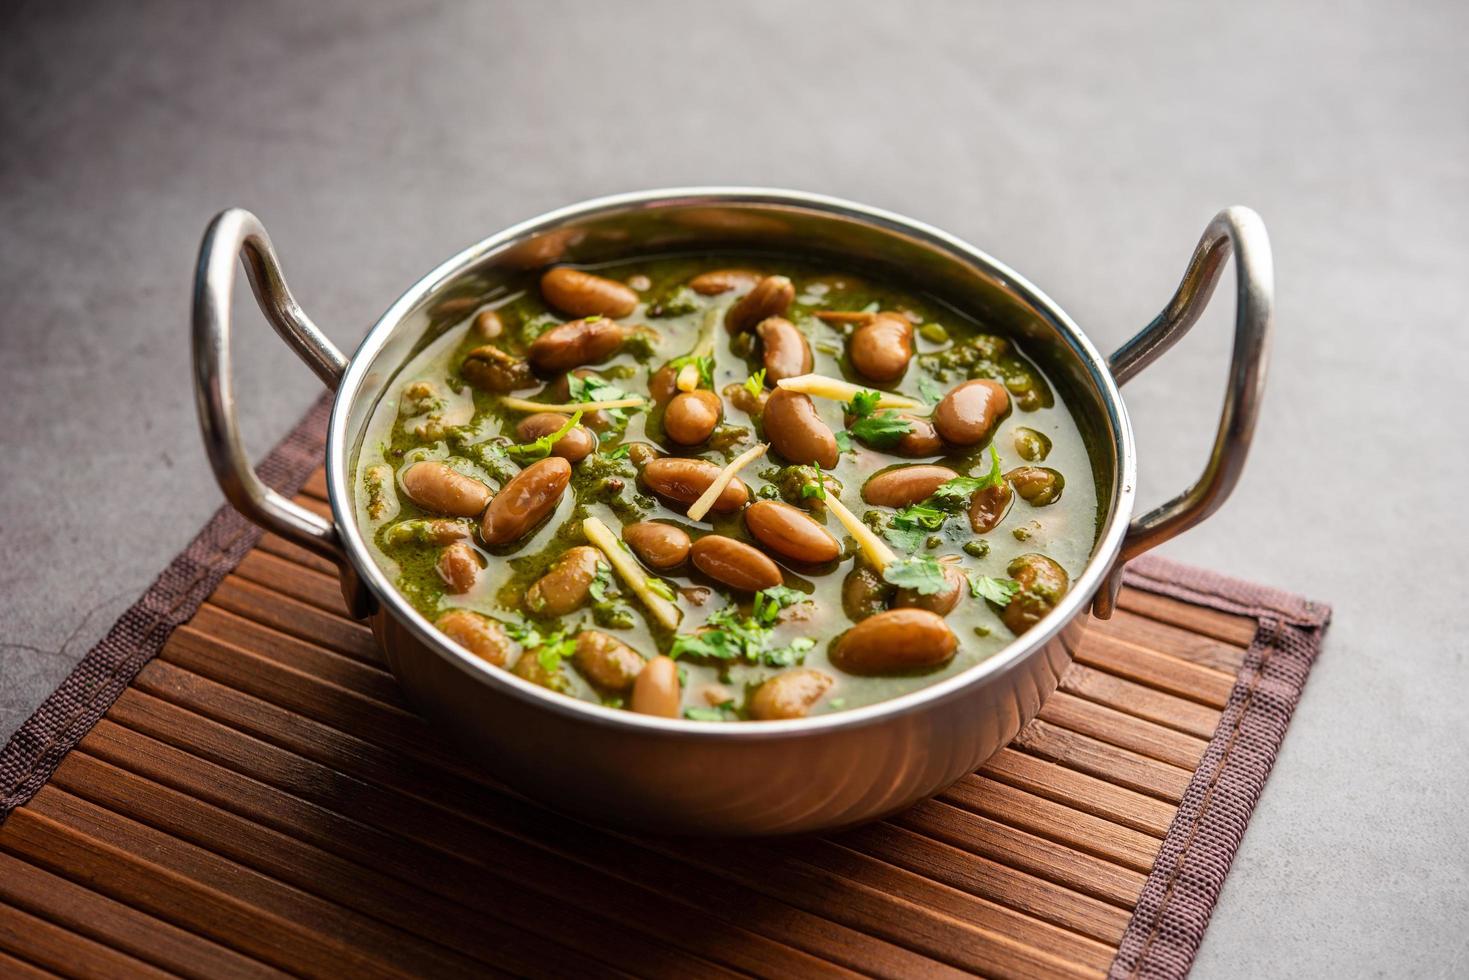 palak rajma masala est un curry indien préparé avec des haricots rouges et des épinards cuits avec des épices photo